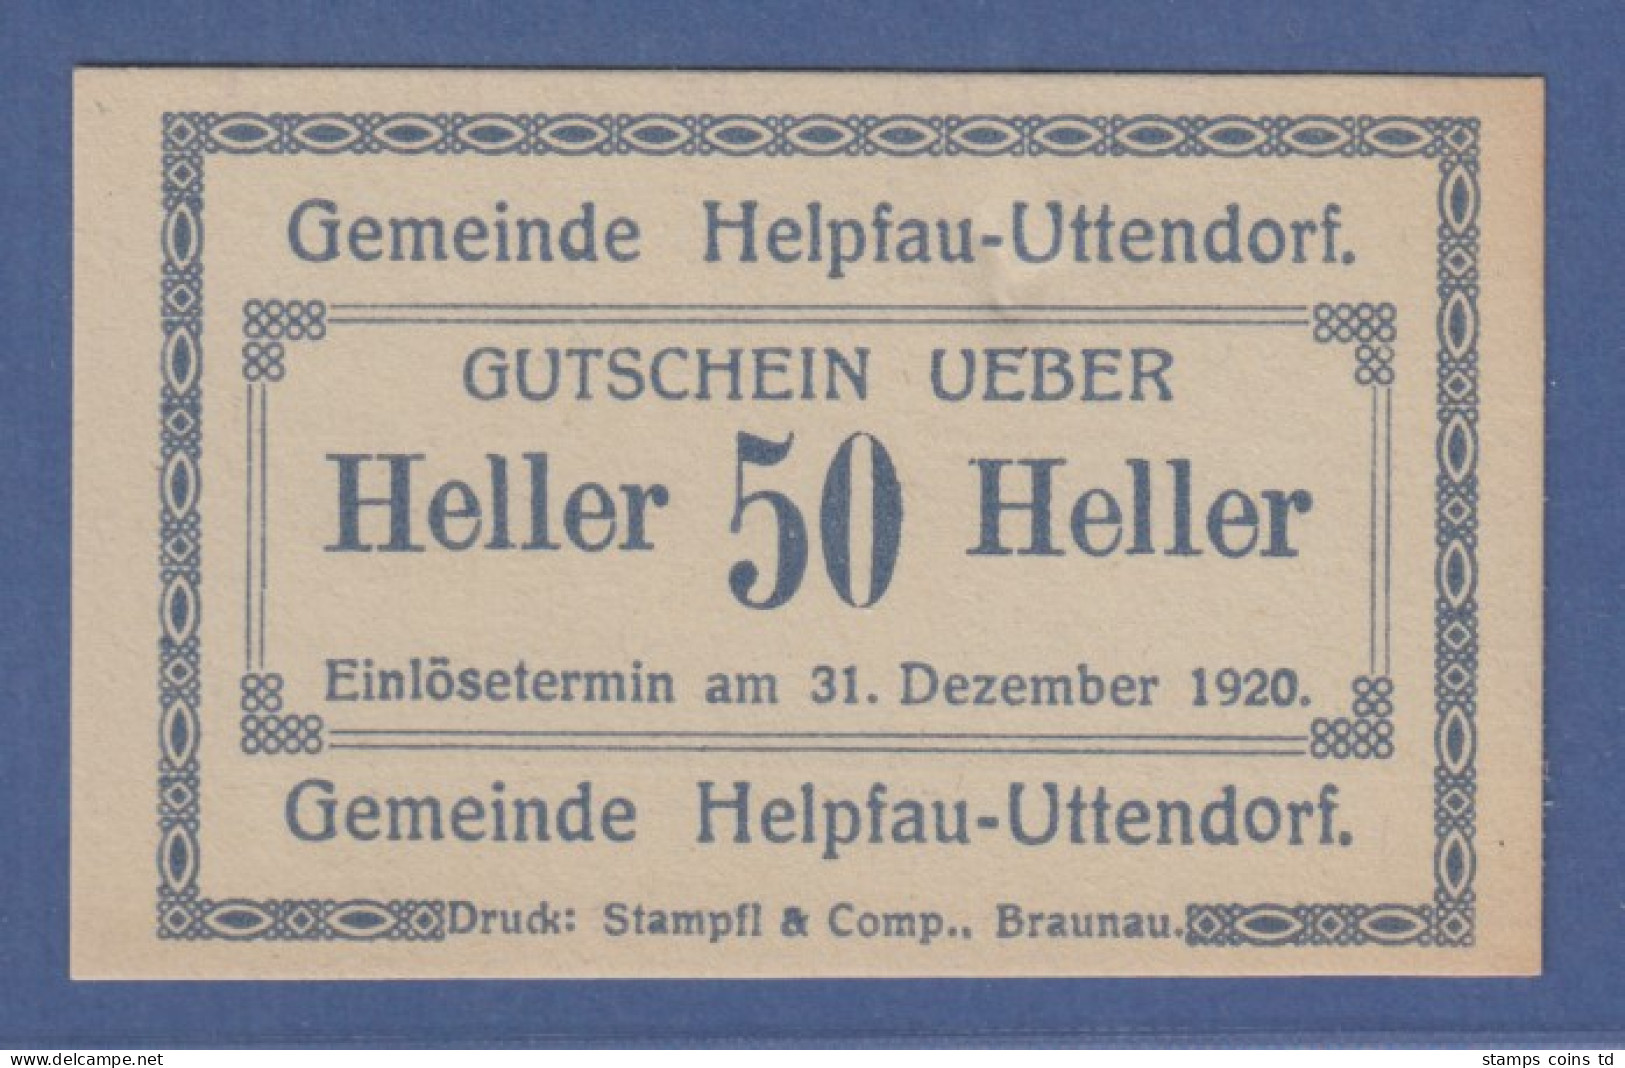 Banknote Österreich Gutschein über 50 Heller Gemeinde Helpfau-Uttendorf, 1920 - Austria